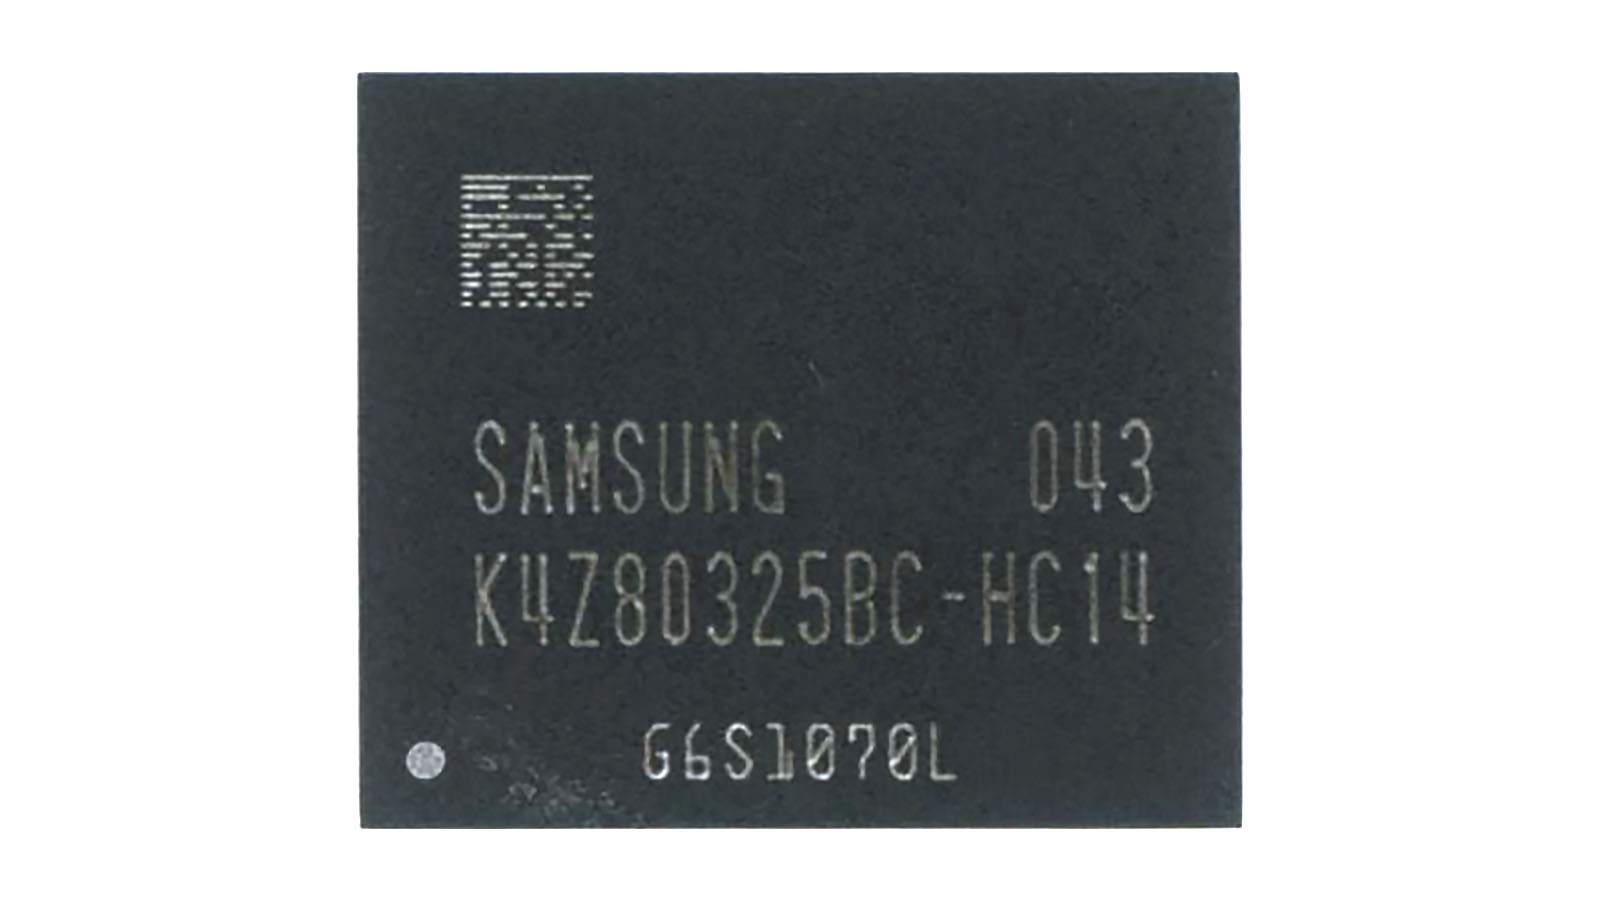 Видеопамять GDDR6 Samsung K4Z80325BC-HC14     20год